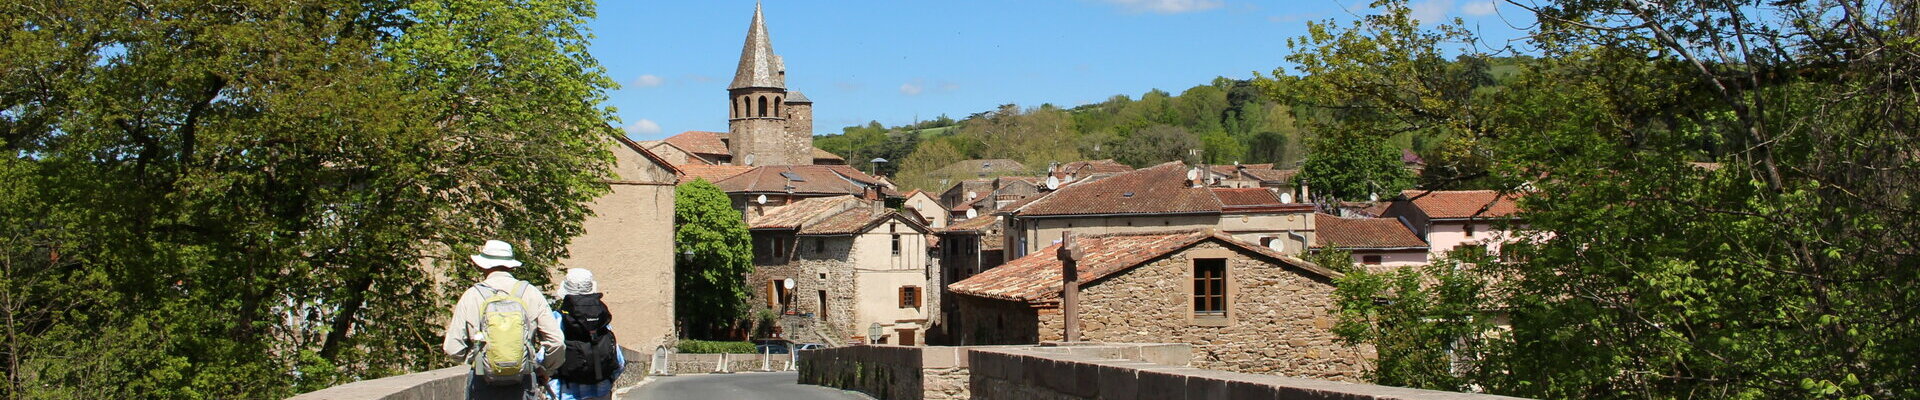 Bienvenue sur le site officiel de la Commune de Monestiés - Tarn